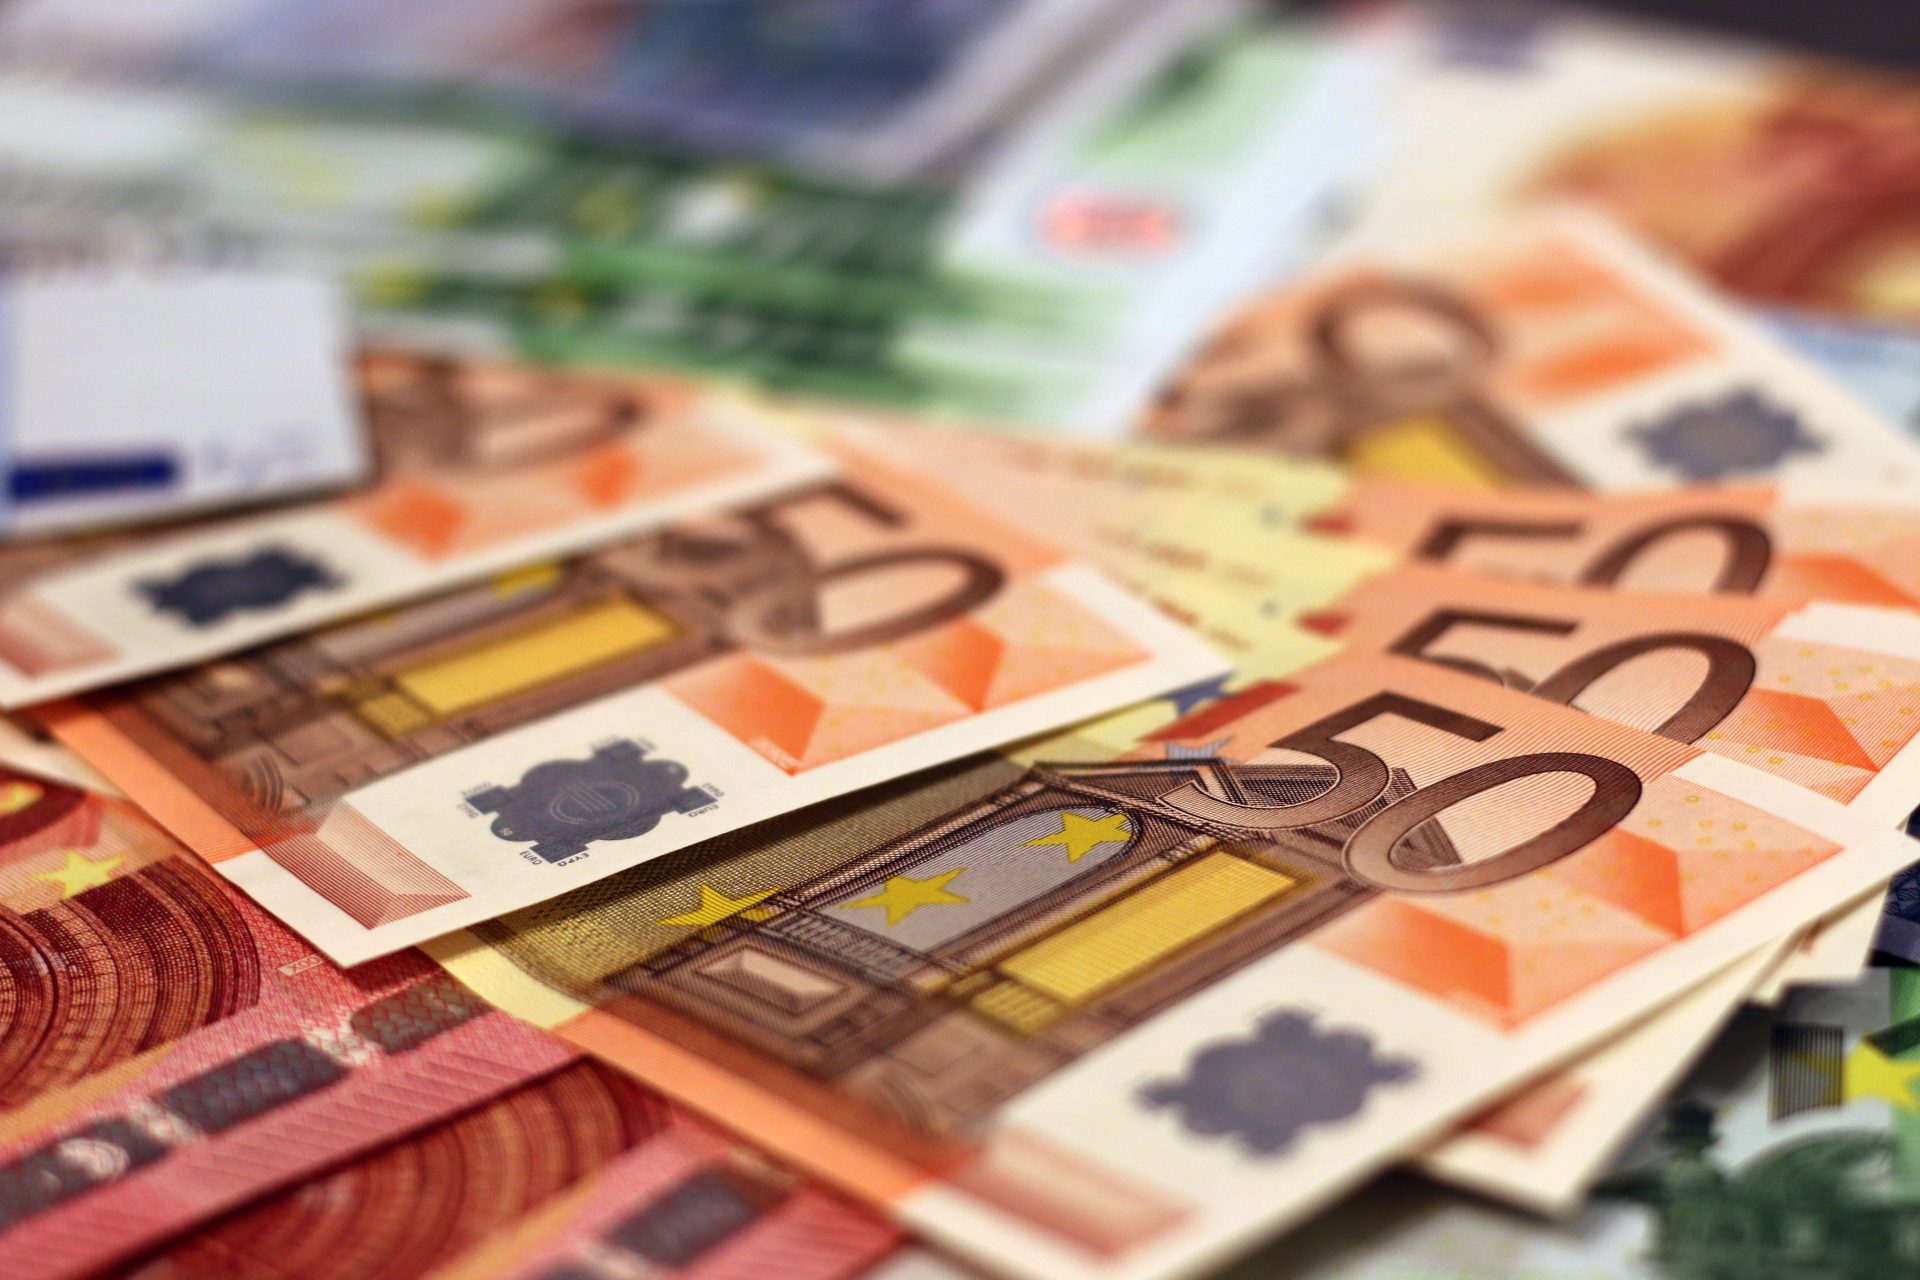 Winstgevendheid bij bedrijven staat onder druk. Hier een plaatje met euro biljetten ter inllustratie.